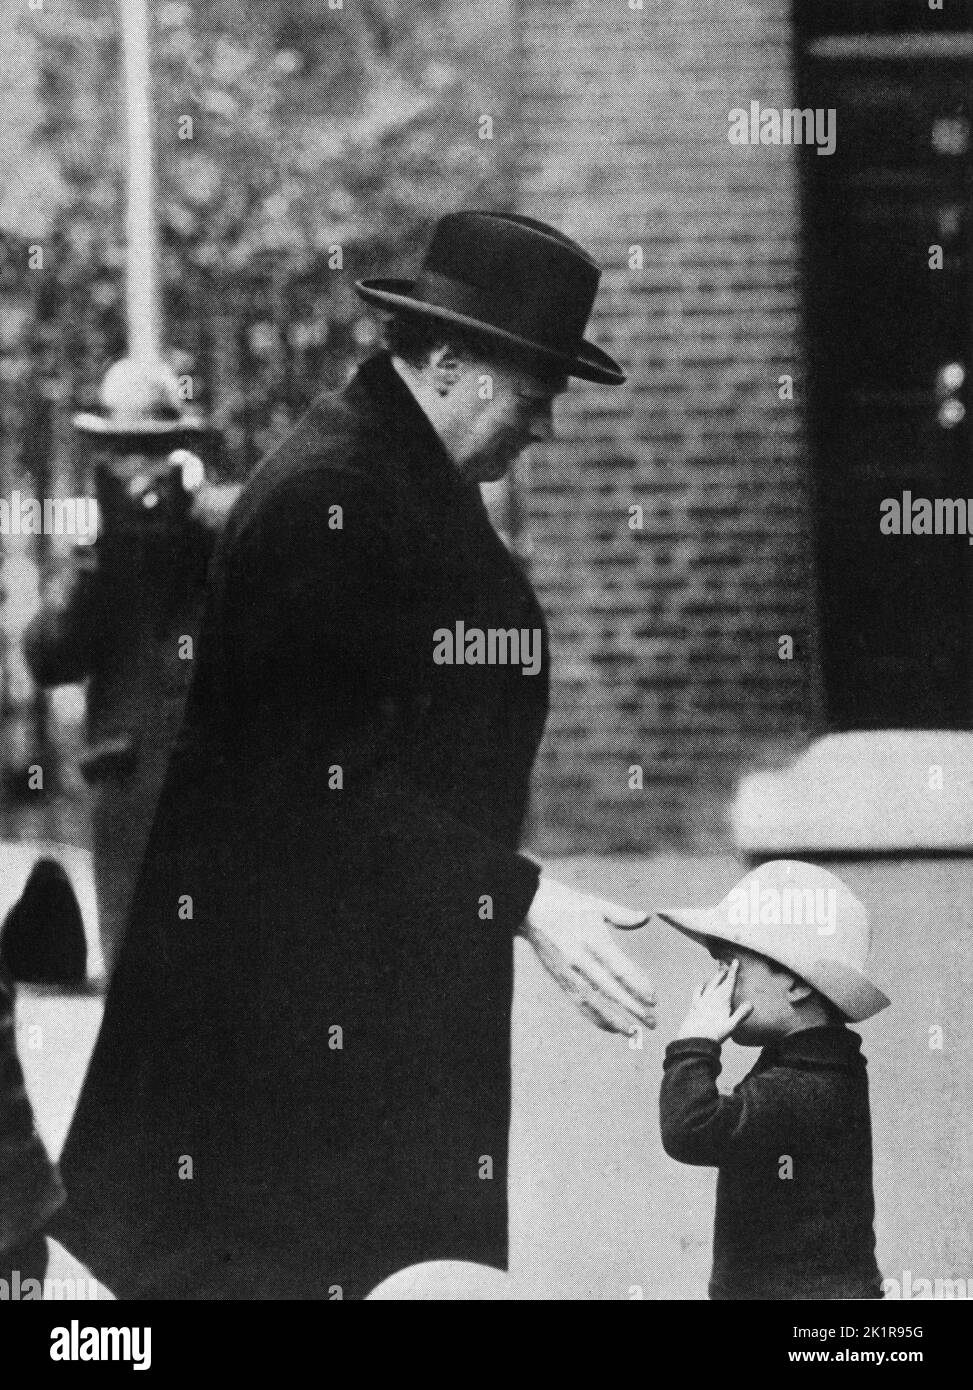 Winston Churchill accueille un petit enfant en route pour assister à une réunion du Cabinet au moment de la grève générale. 1926. Banque D'Images